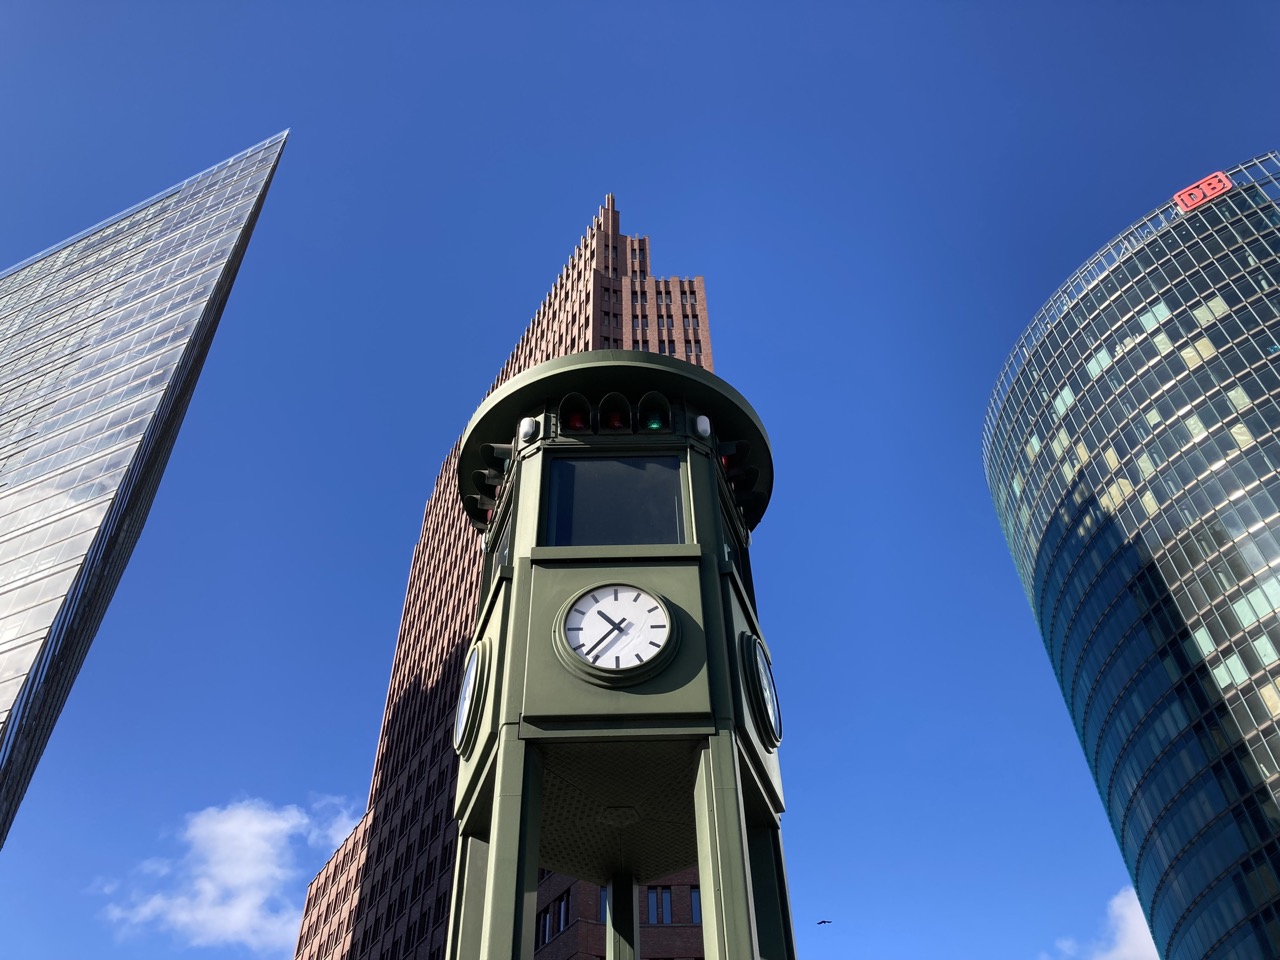 Stadtbild Potsdamer Platz mit Renzo Piano-Tower, Helmut Jahn-Tower, dazwischen verdeckt durch historische Ampel: Hans Kollhoff-Tower